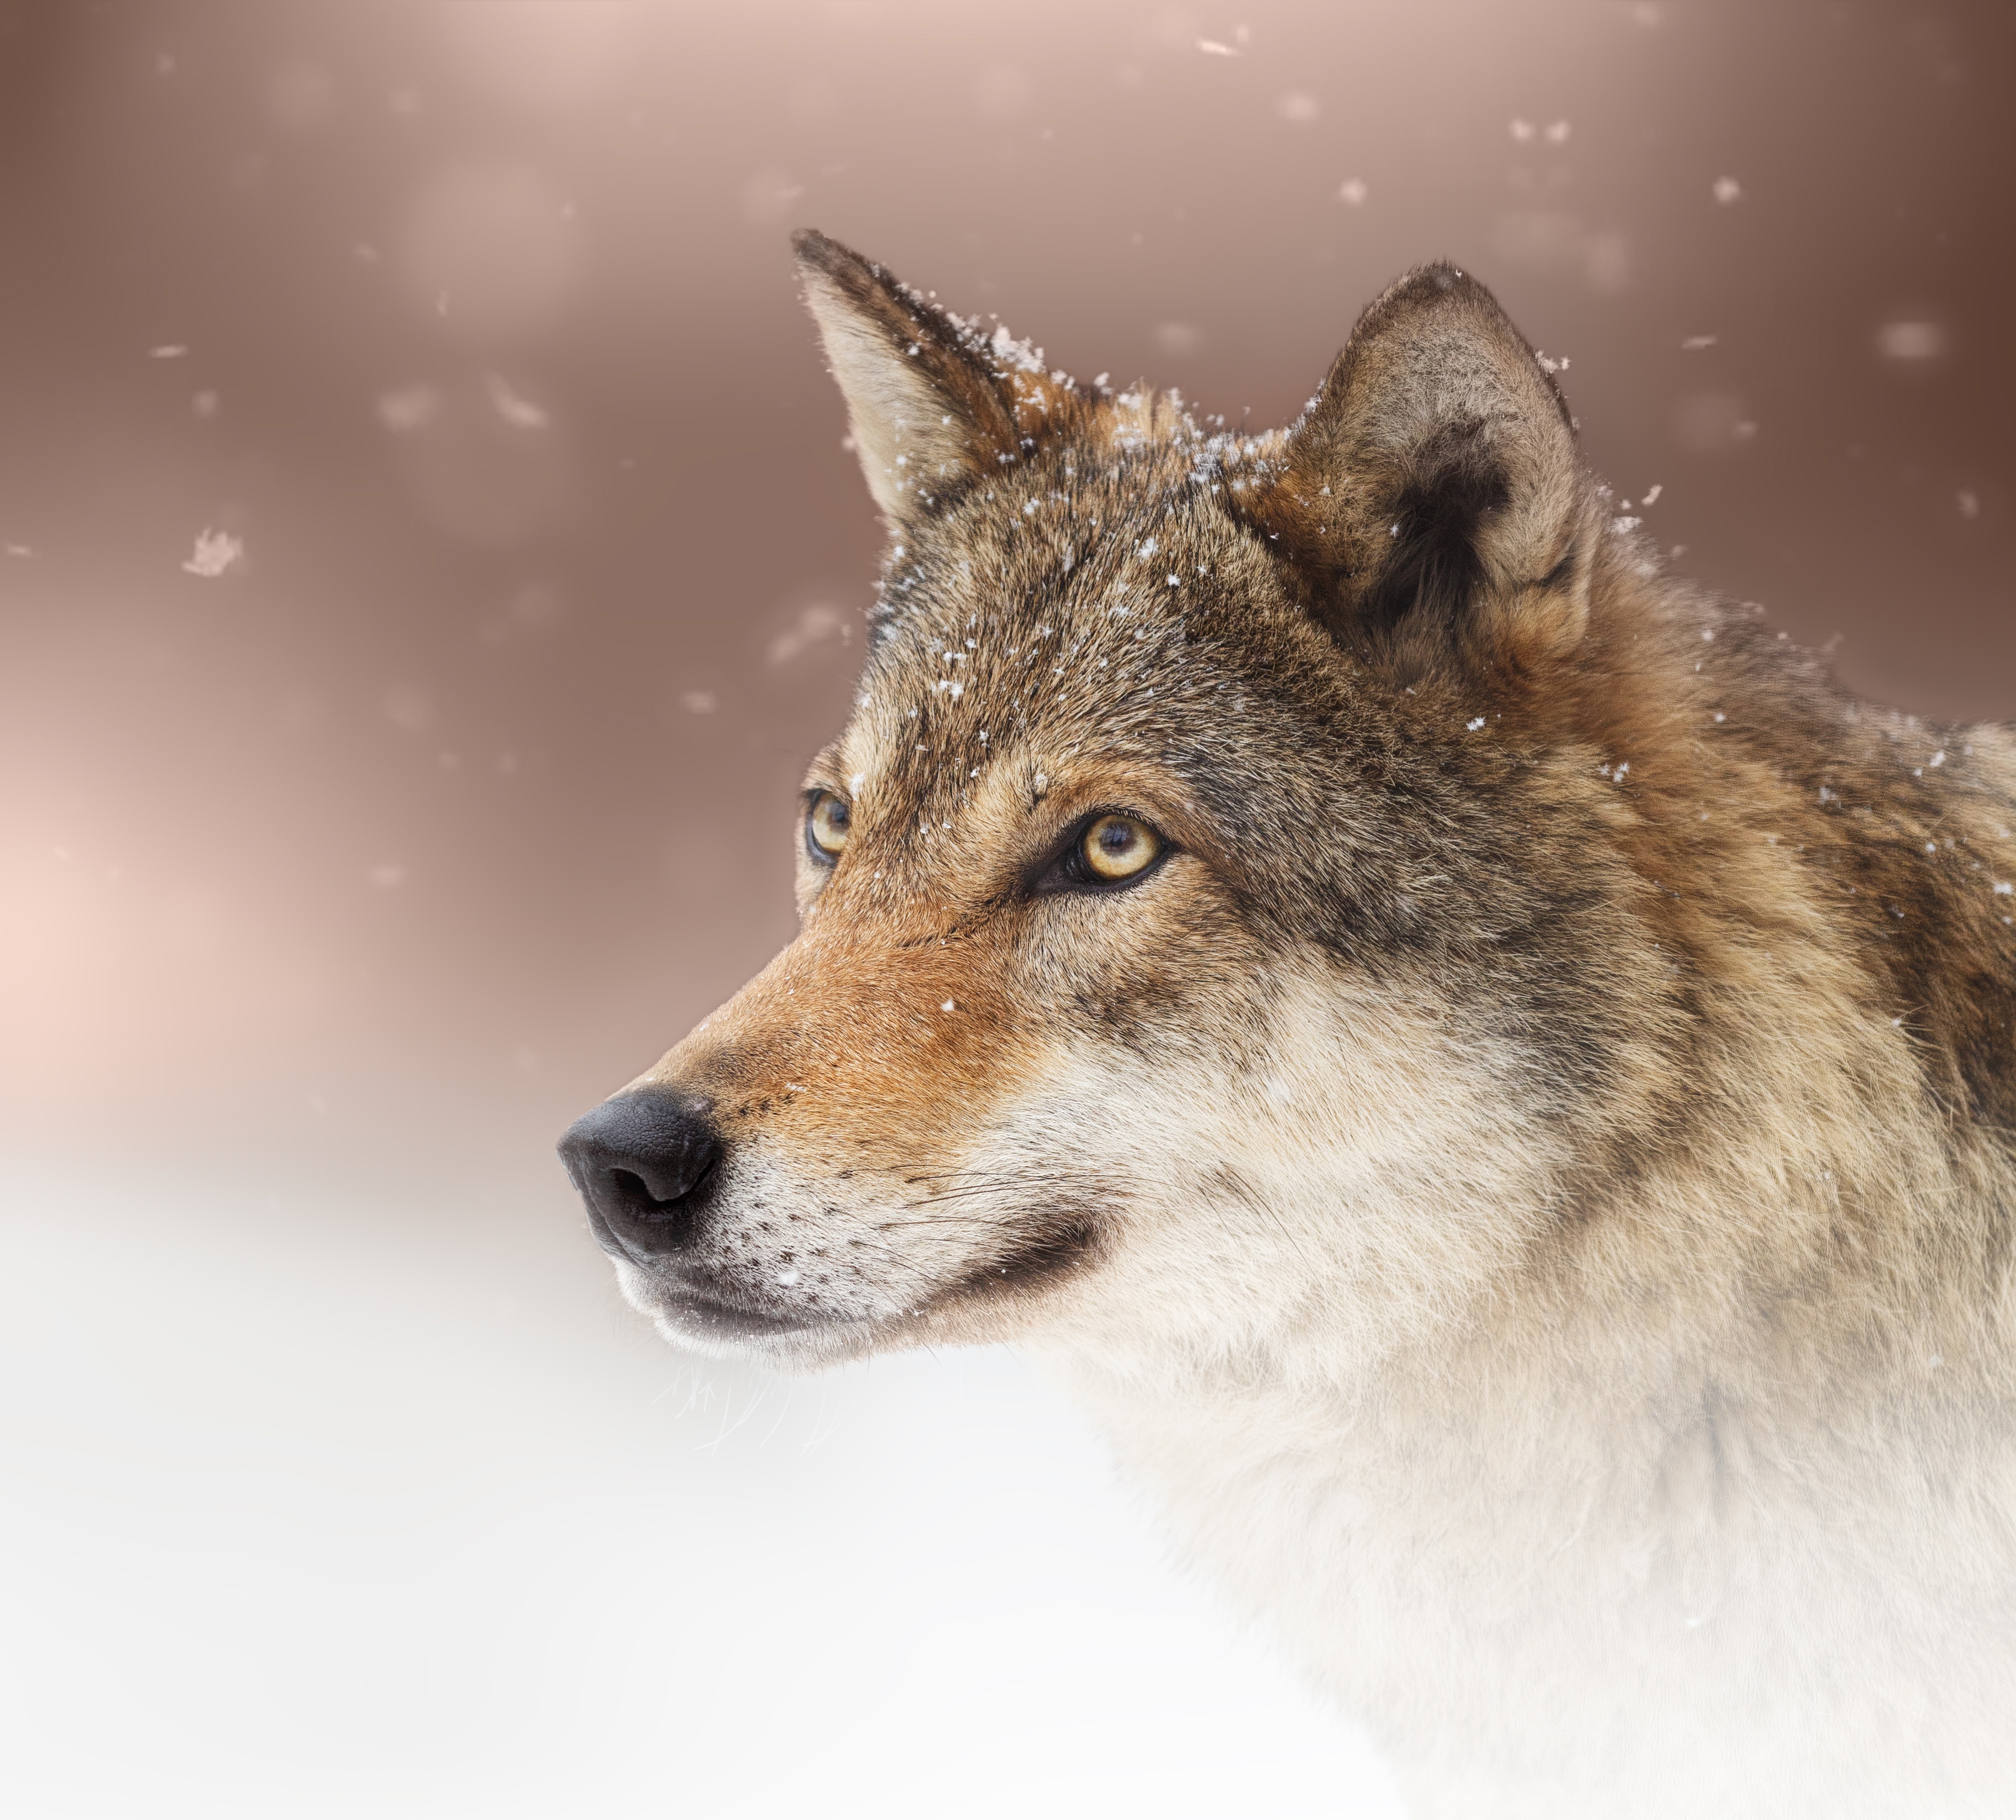 Descarga gratis la imagen Wolves, Lobo, Animales en el escritorio de tu PC